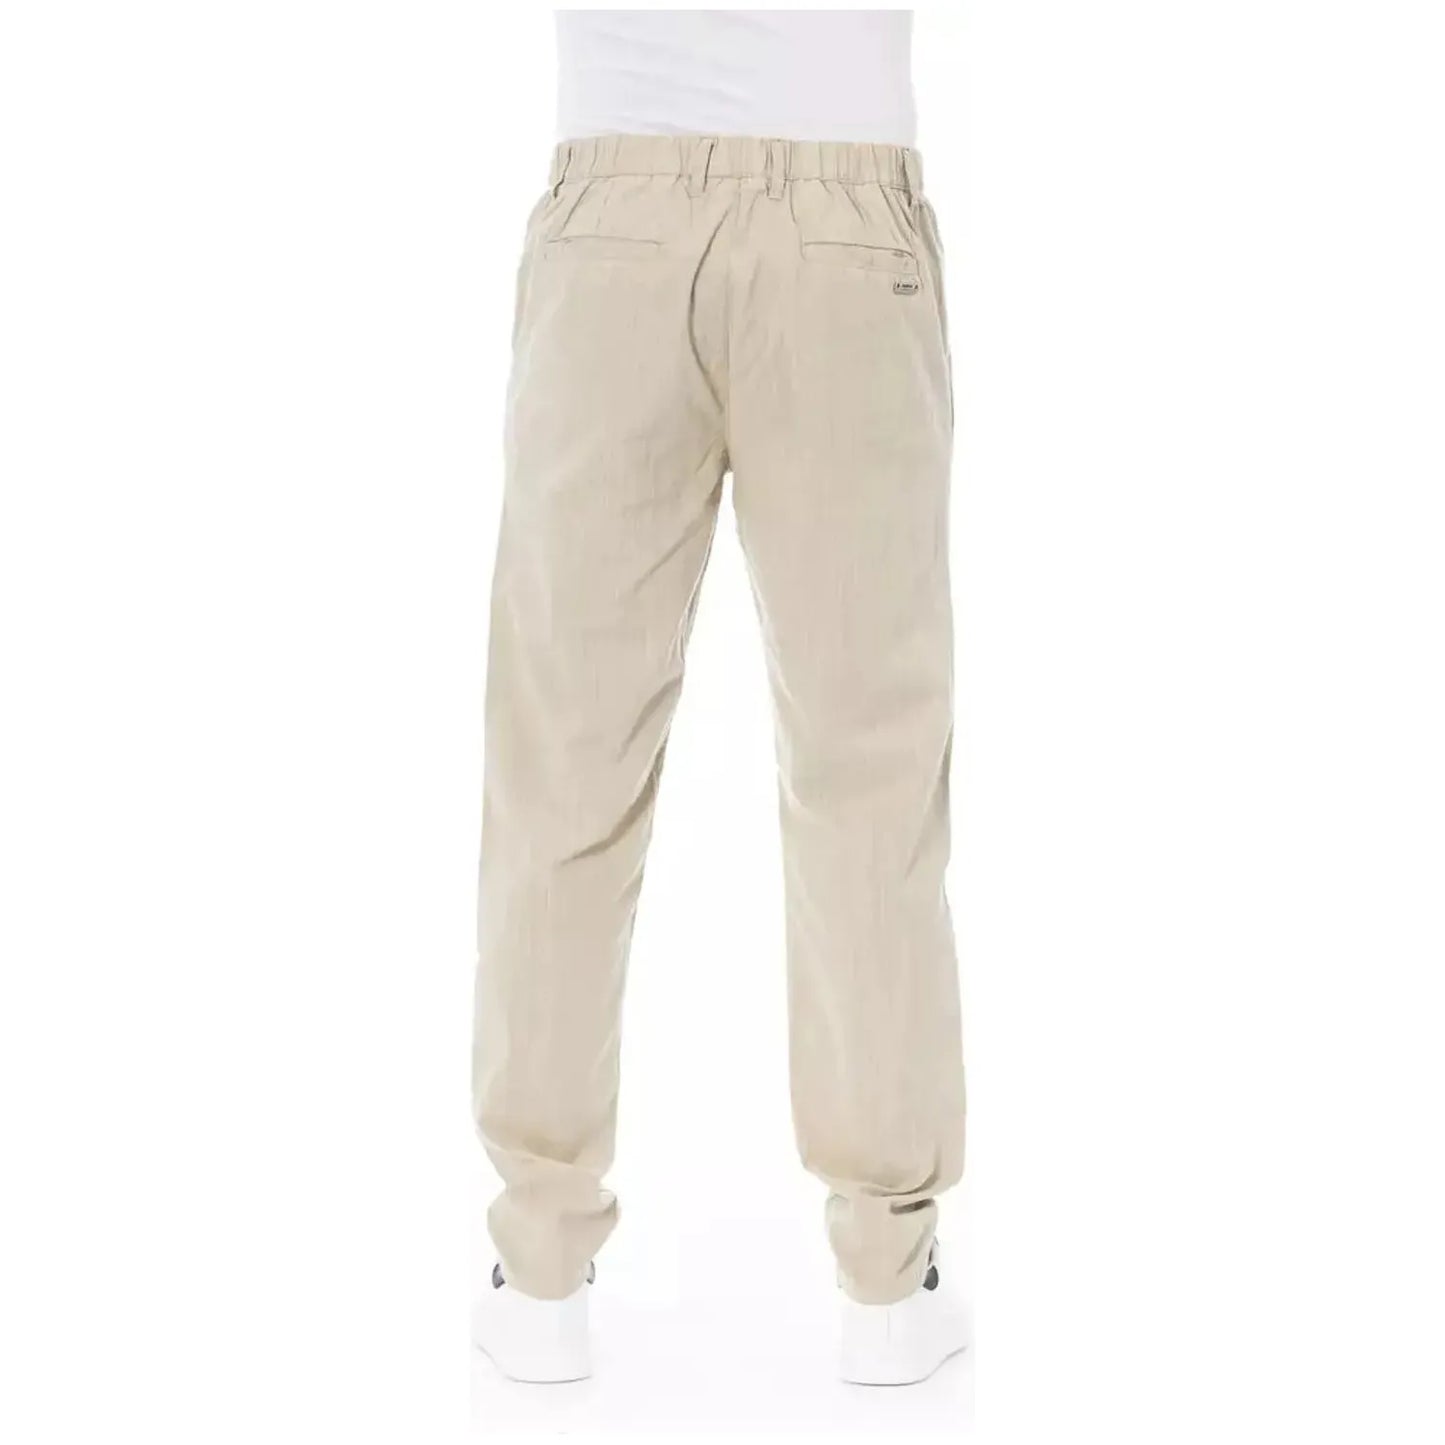 Baldinini Trend Elegant Beige Cotton Chino Trousers beige-cotton-jeans-pant-42 product-23131-1828539553-24-995f07ec-115.webp